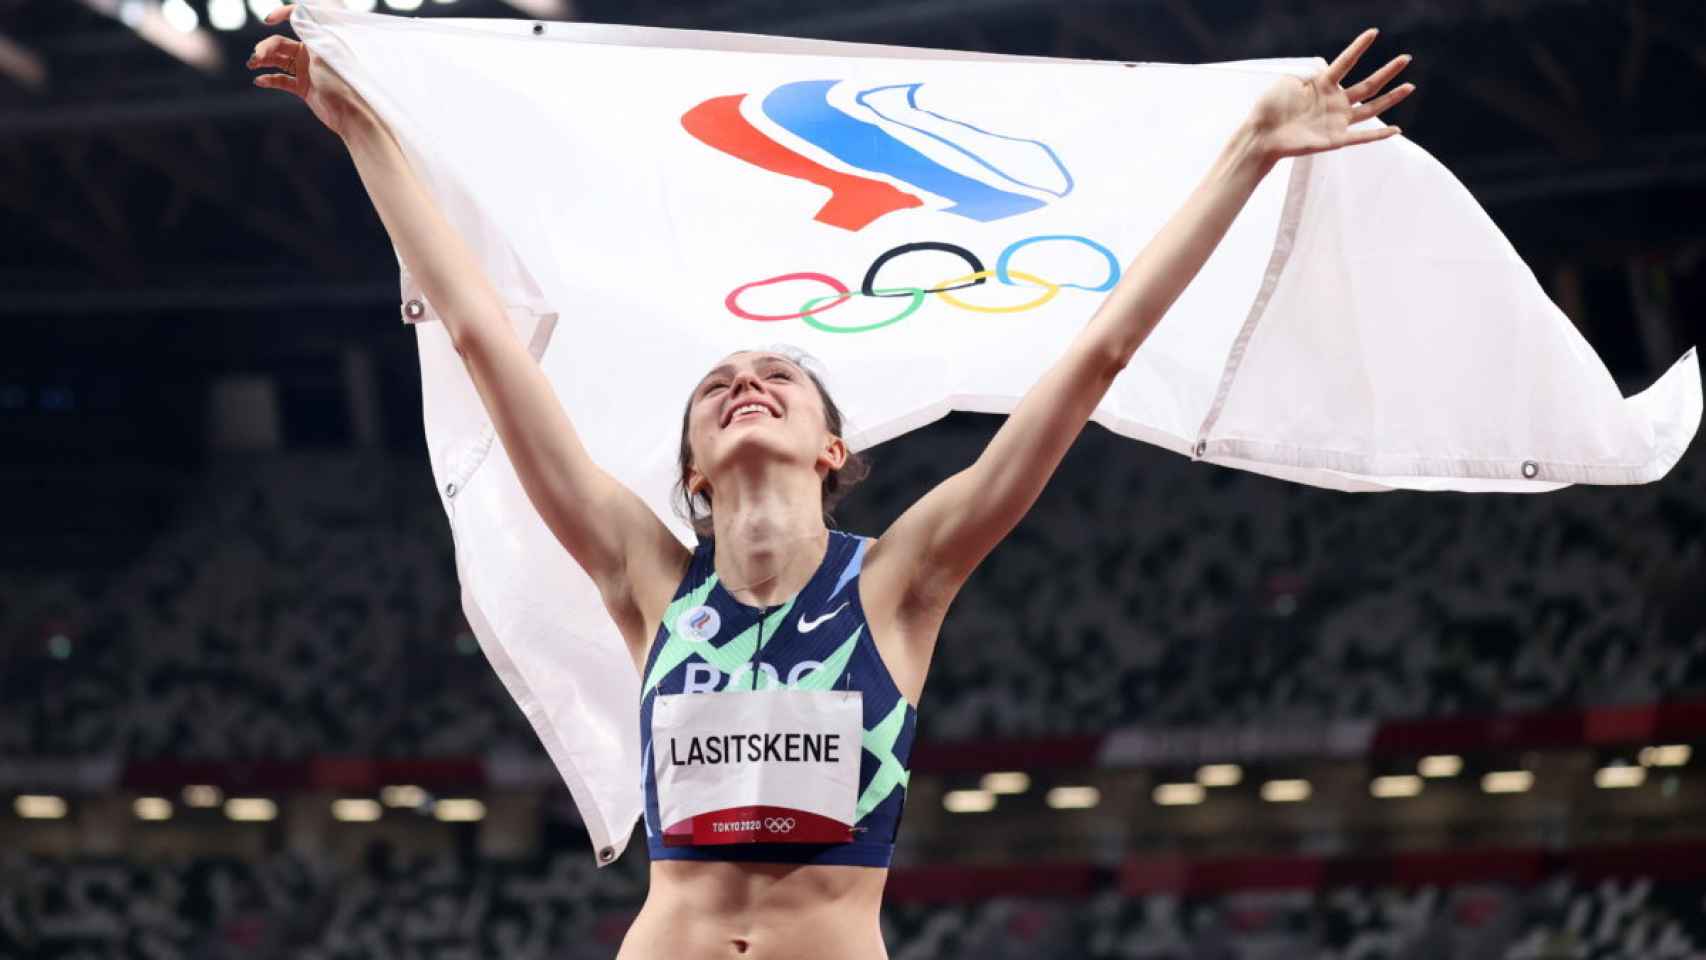 María Lasitskene tras ganar el oro en salto de alturas en los Juegos Olímpicos de Tokio 2020